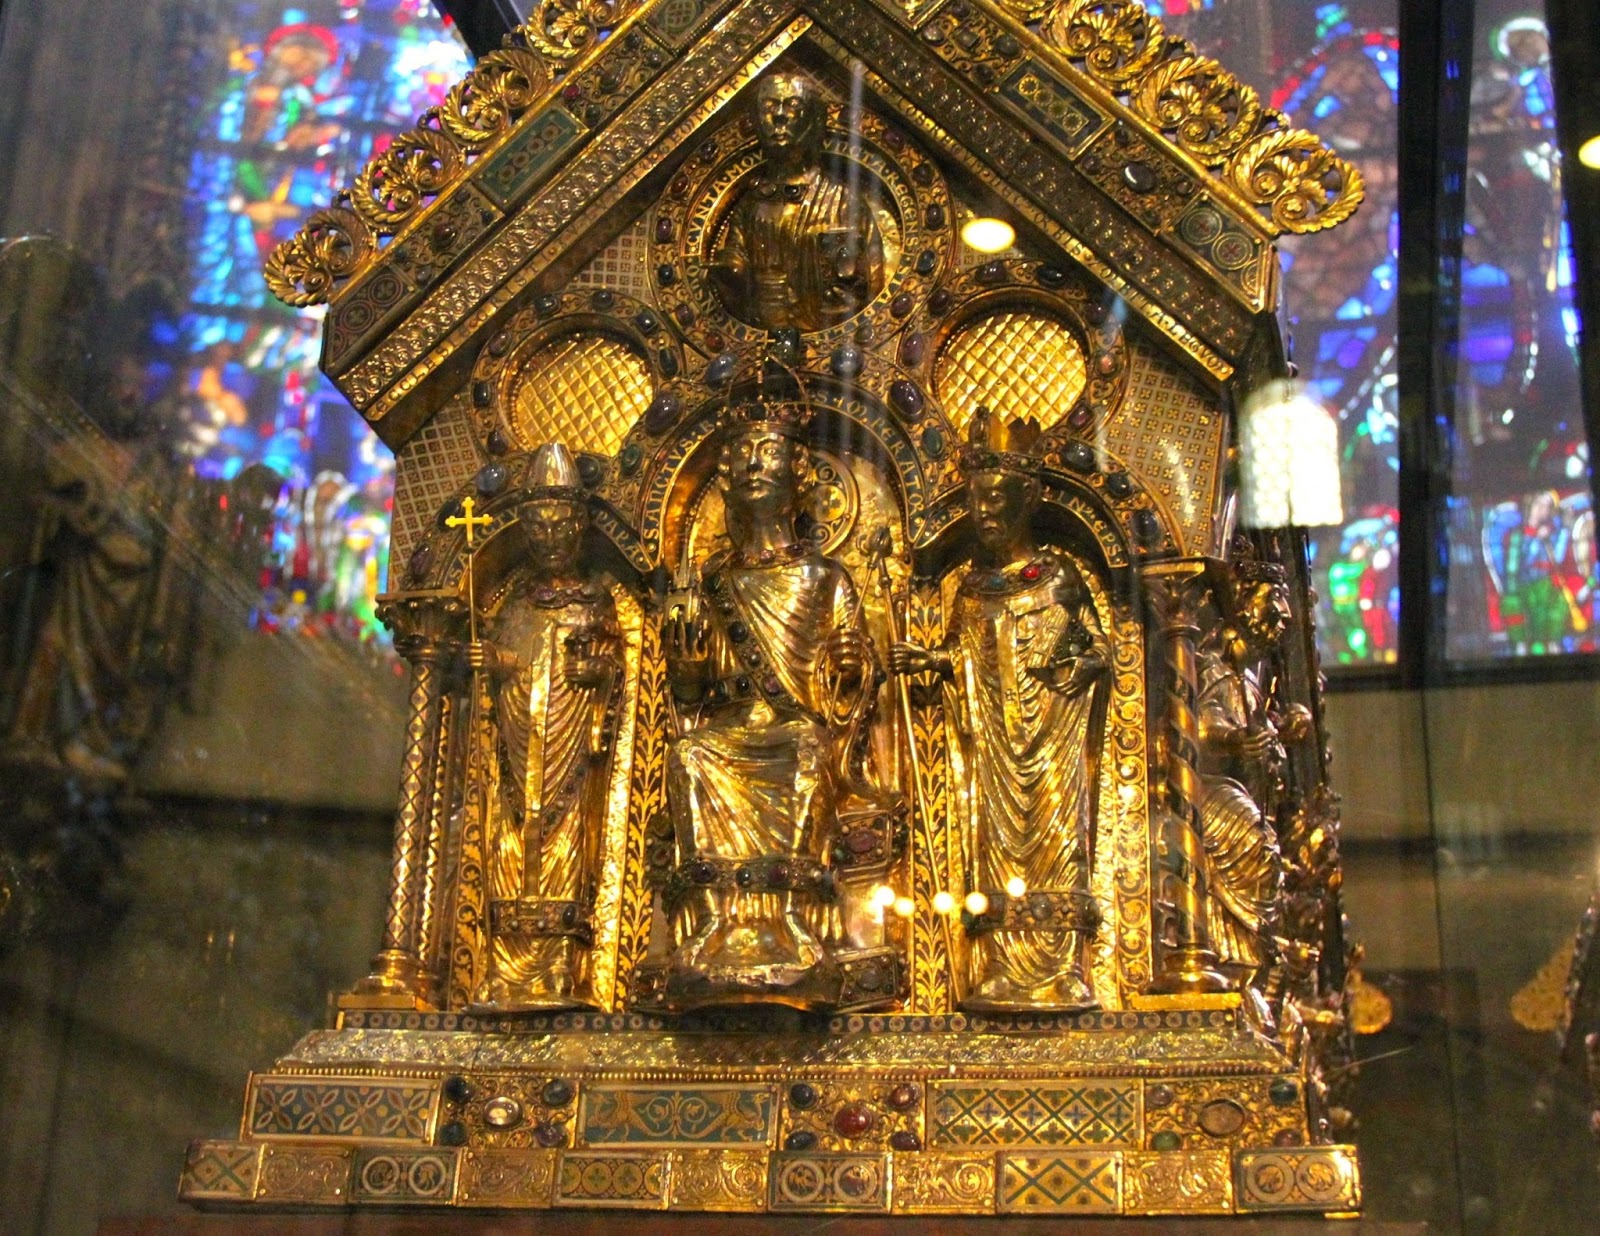 Η λειψανοθήκη της Παναγίας του Άαχεν http://leipsanothiki.blogspot.be/